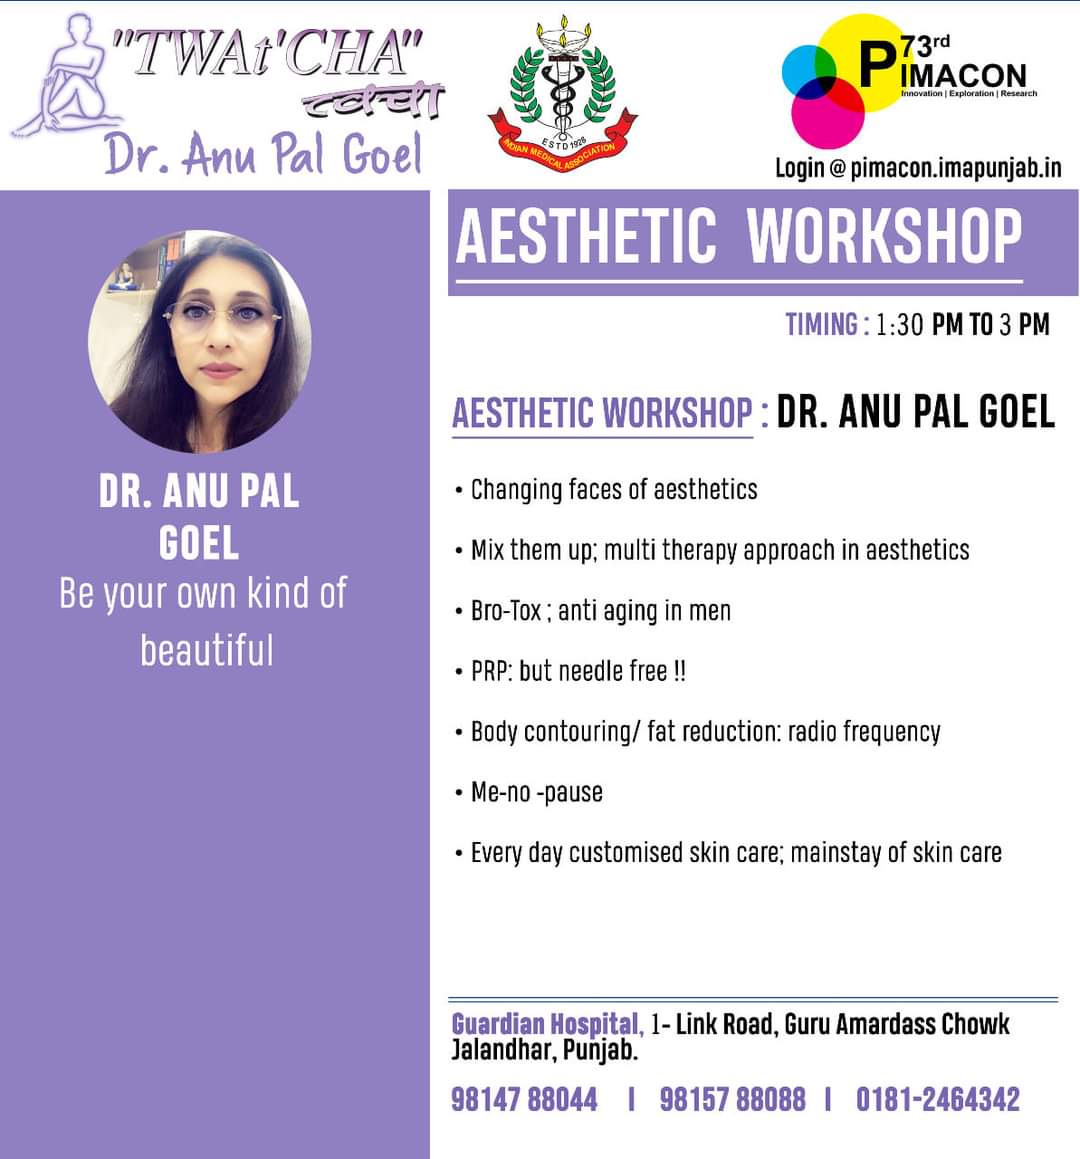 Workshop : Live Workshop by Dr. Anu Pal Goel